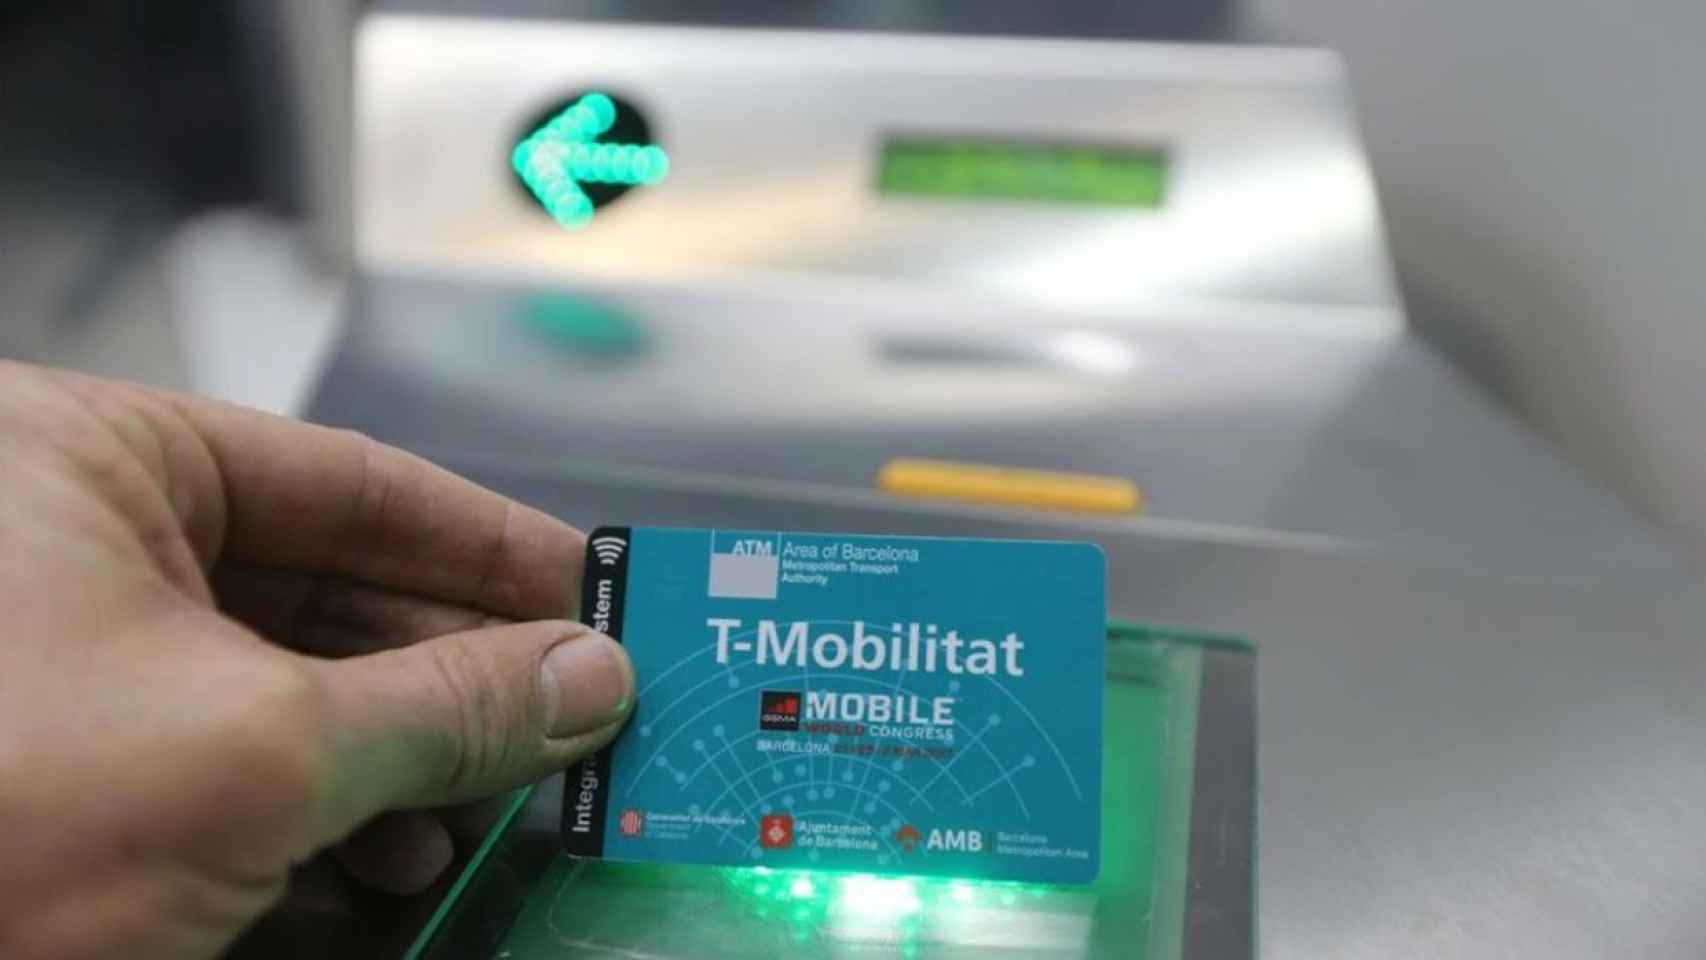 La tarjeta T-Mobilitat está prevista para 2021 / Archivo